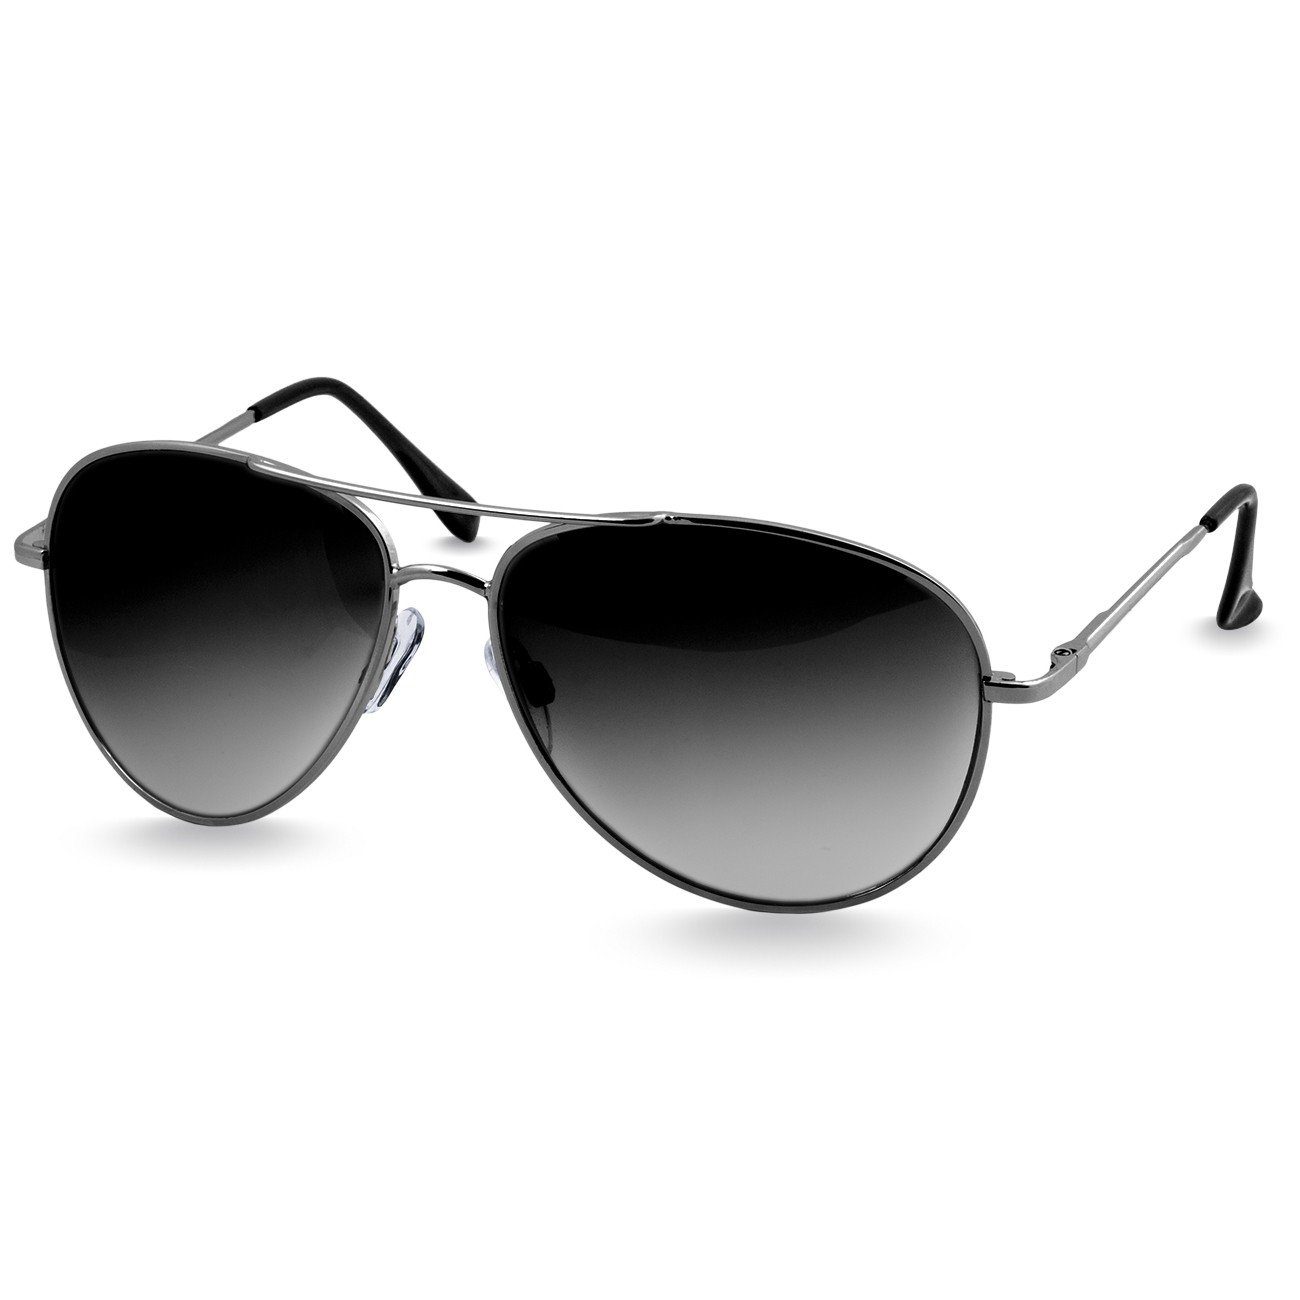 Caspar Sonnenbrille klassische Pilotenbrille / schwarz silber getönt Unisex SG013 Retro